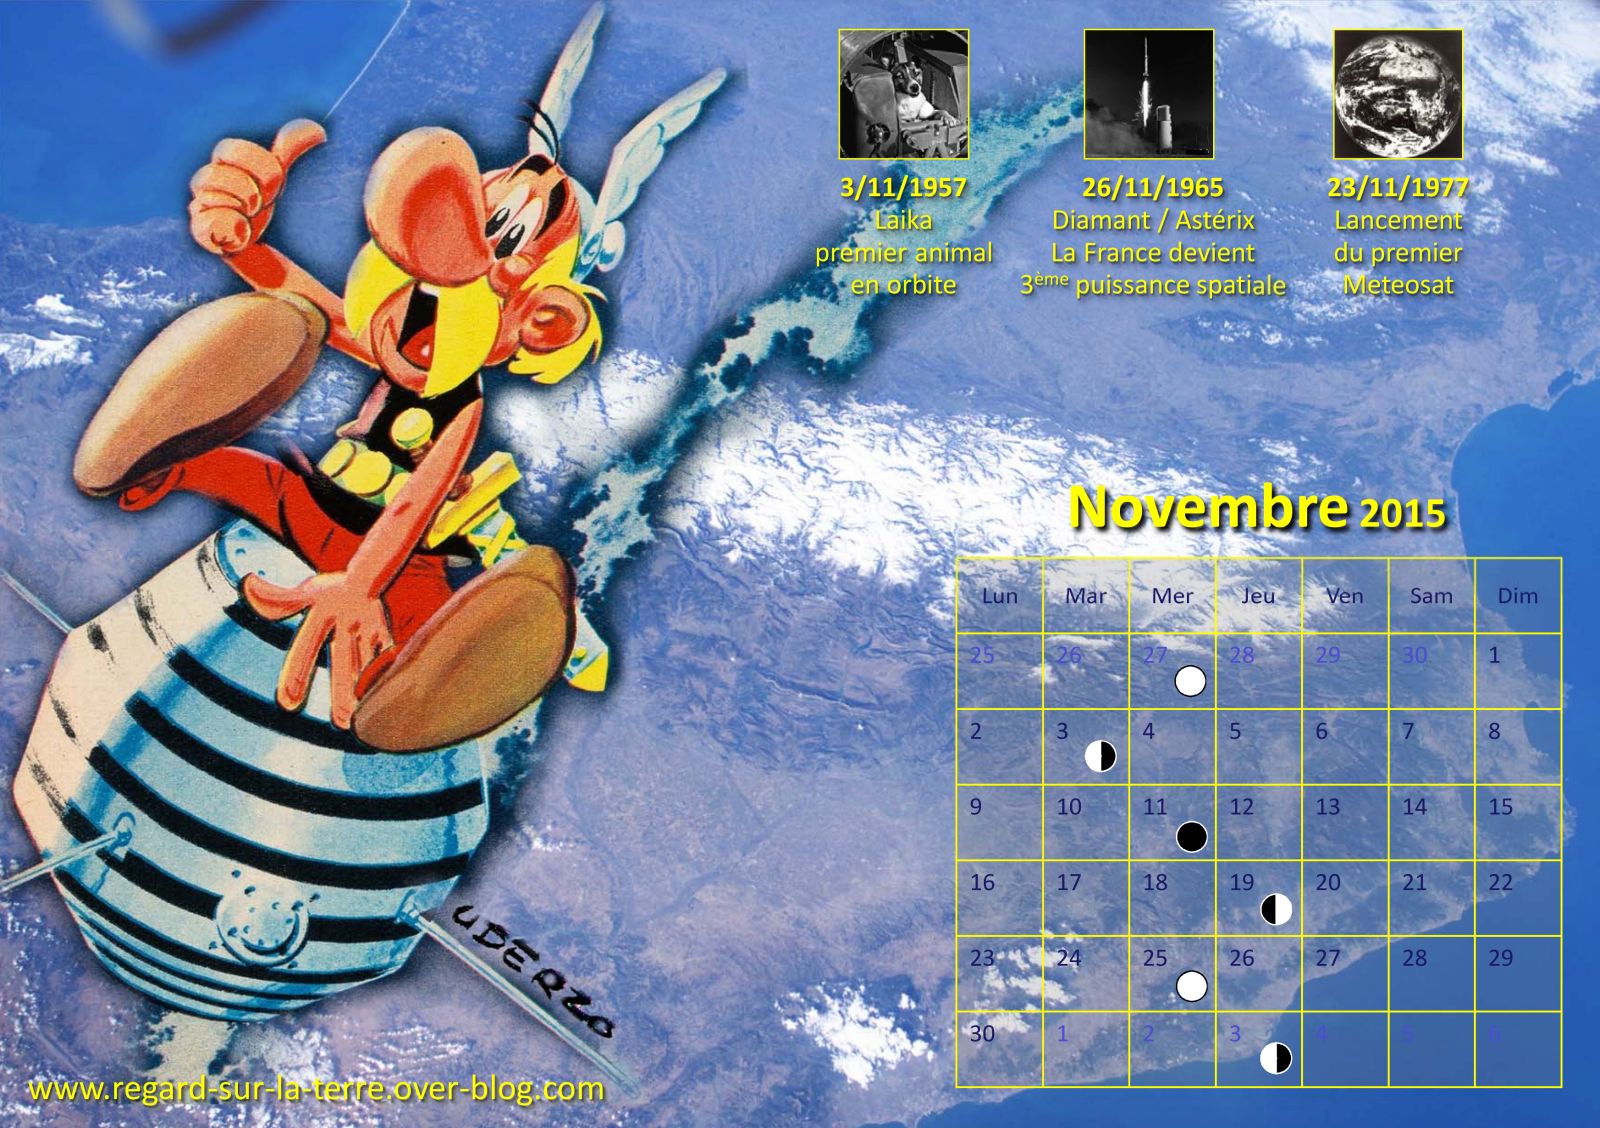 Astérix - A1 - Diamant - Premier satellite français - 26 novembre 1965 - 50 ans - calendrier spatial et astronomique - Laika - Meteosat-1